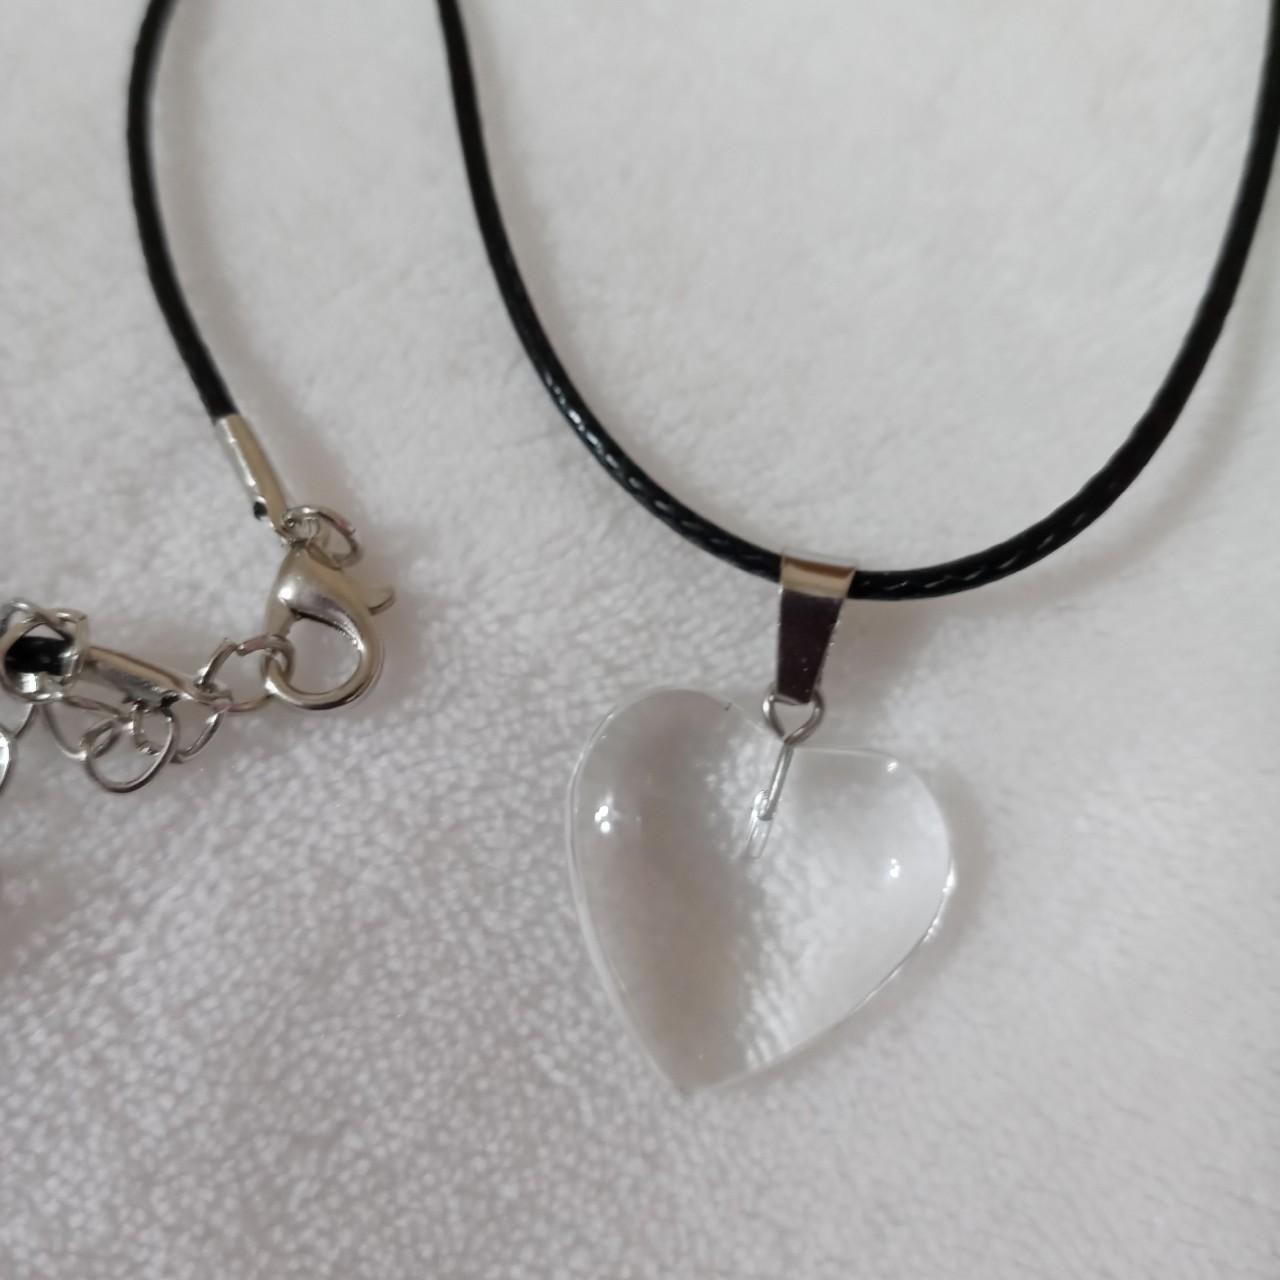 Small clear transparent glass heart necklace choker... - Depop